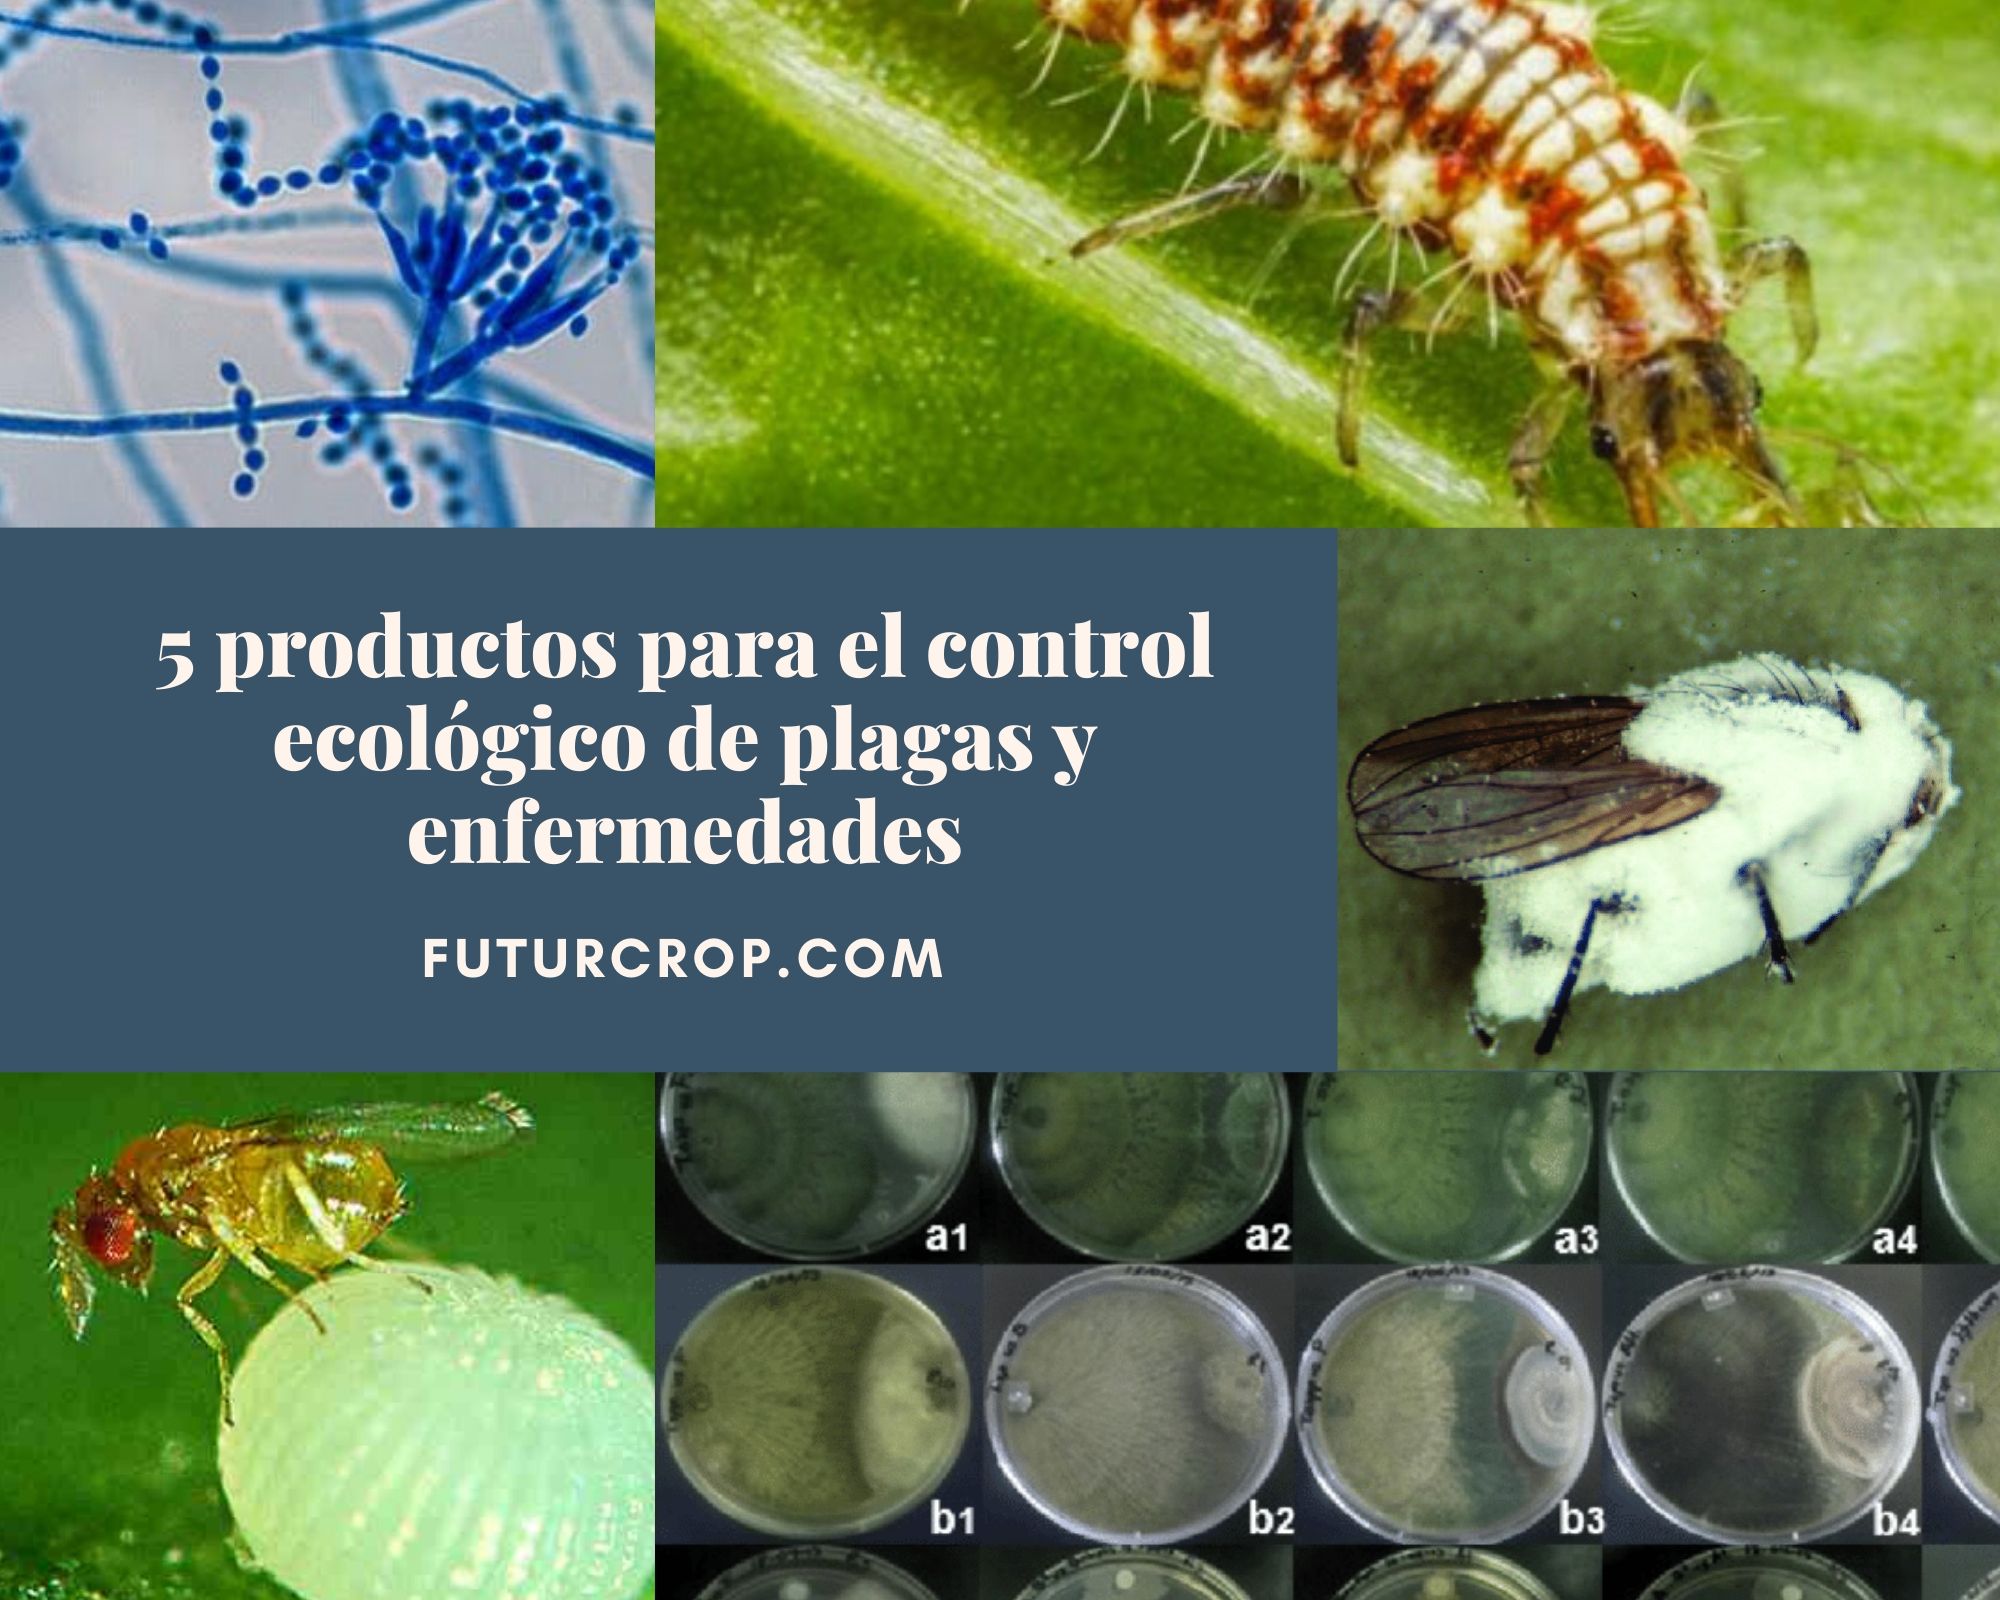 5 productos para el control ecológico de plagas y enfermedades